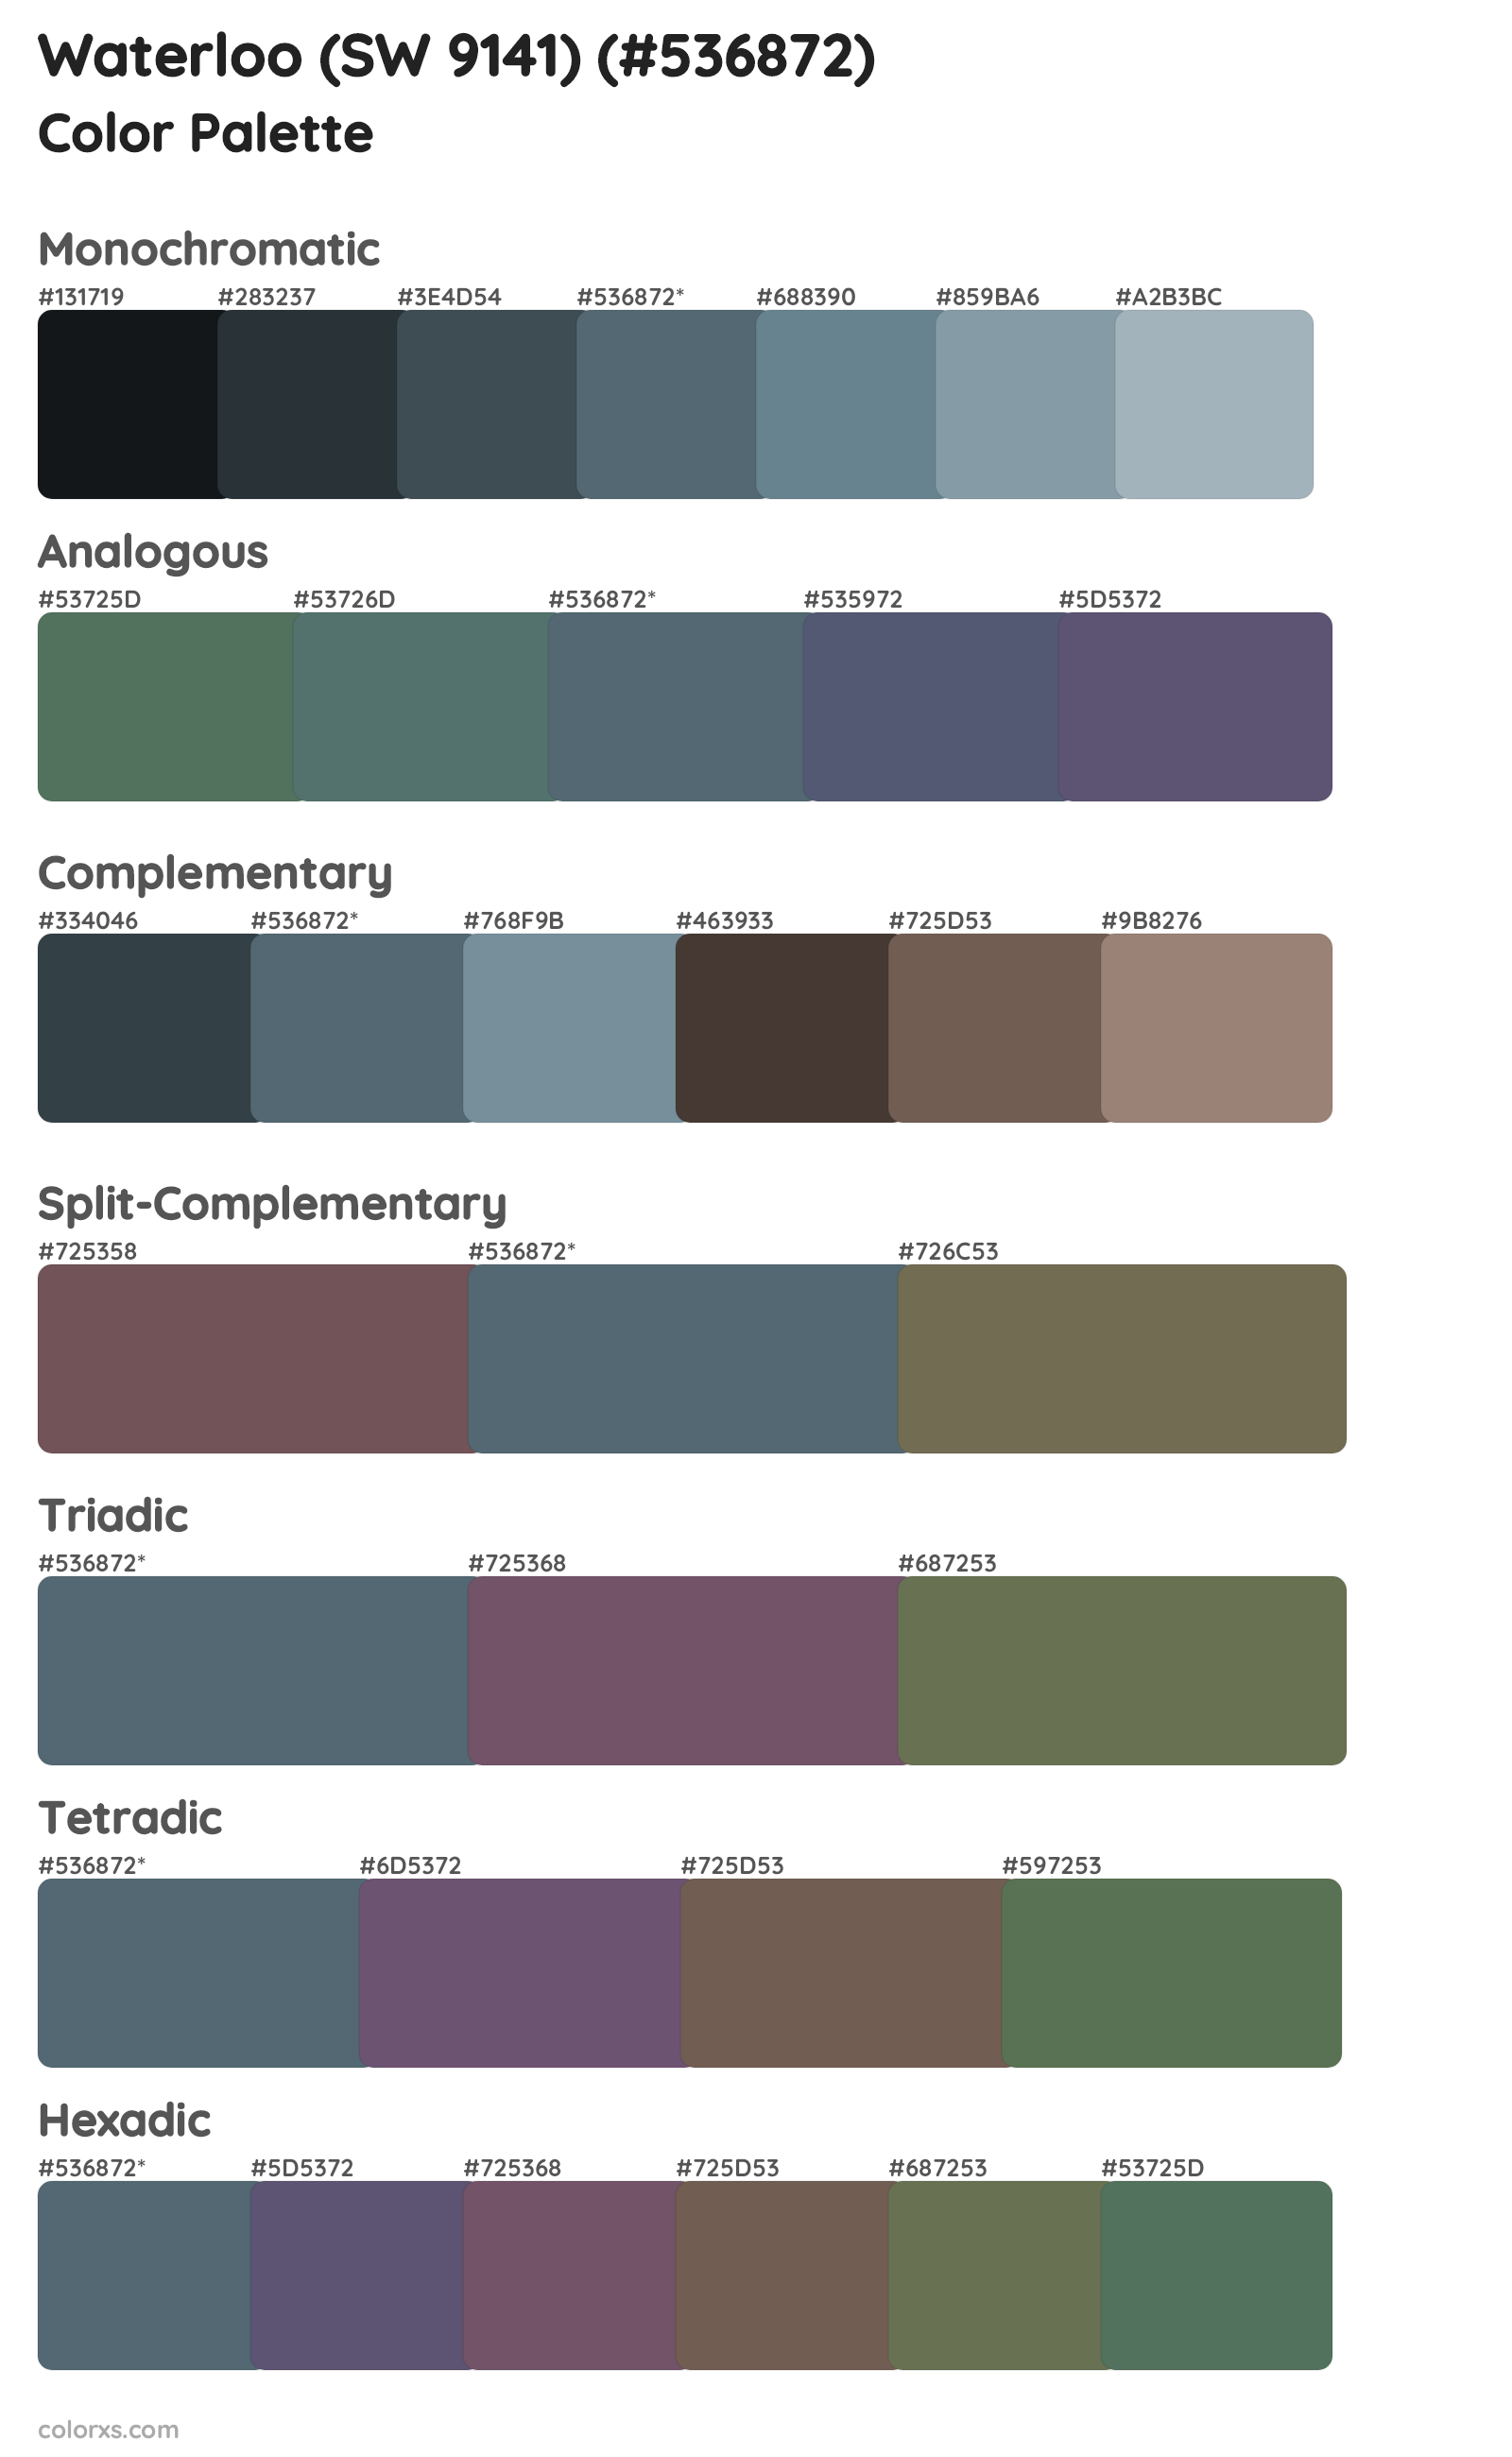 Waterloo (SW 9141) Color Scheme Palettes